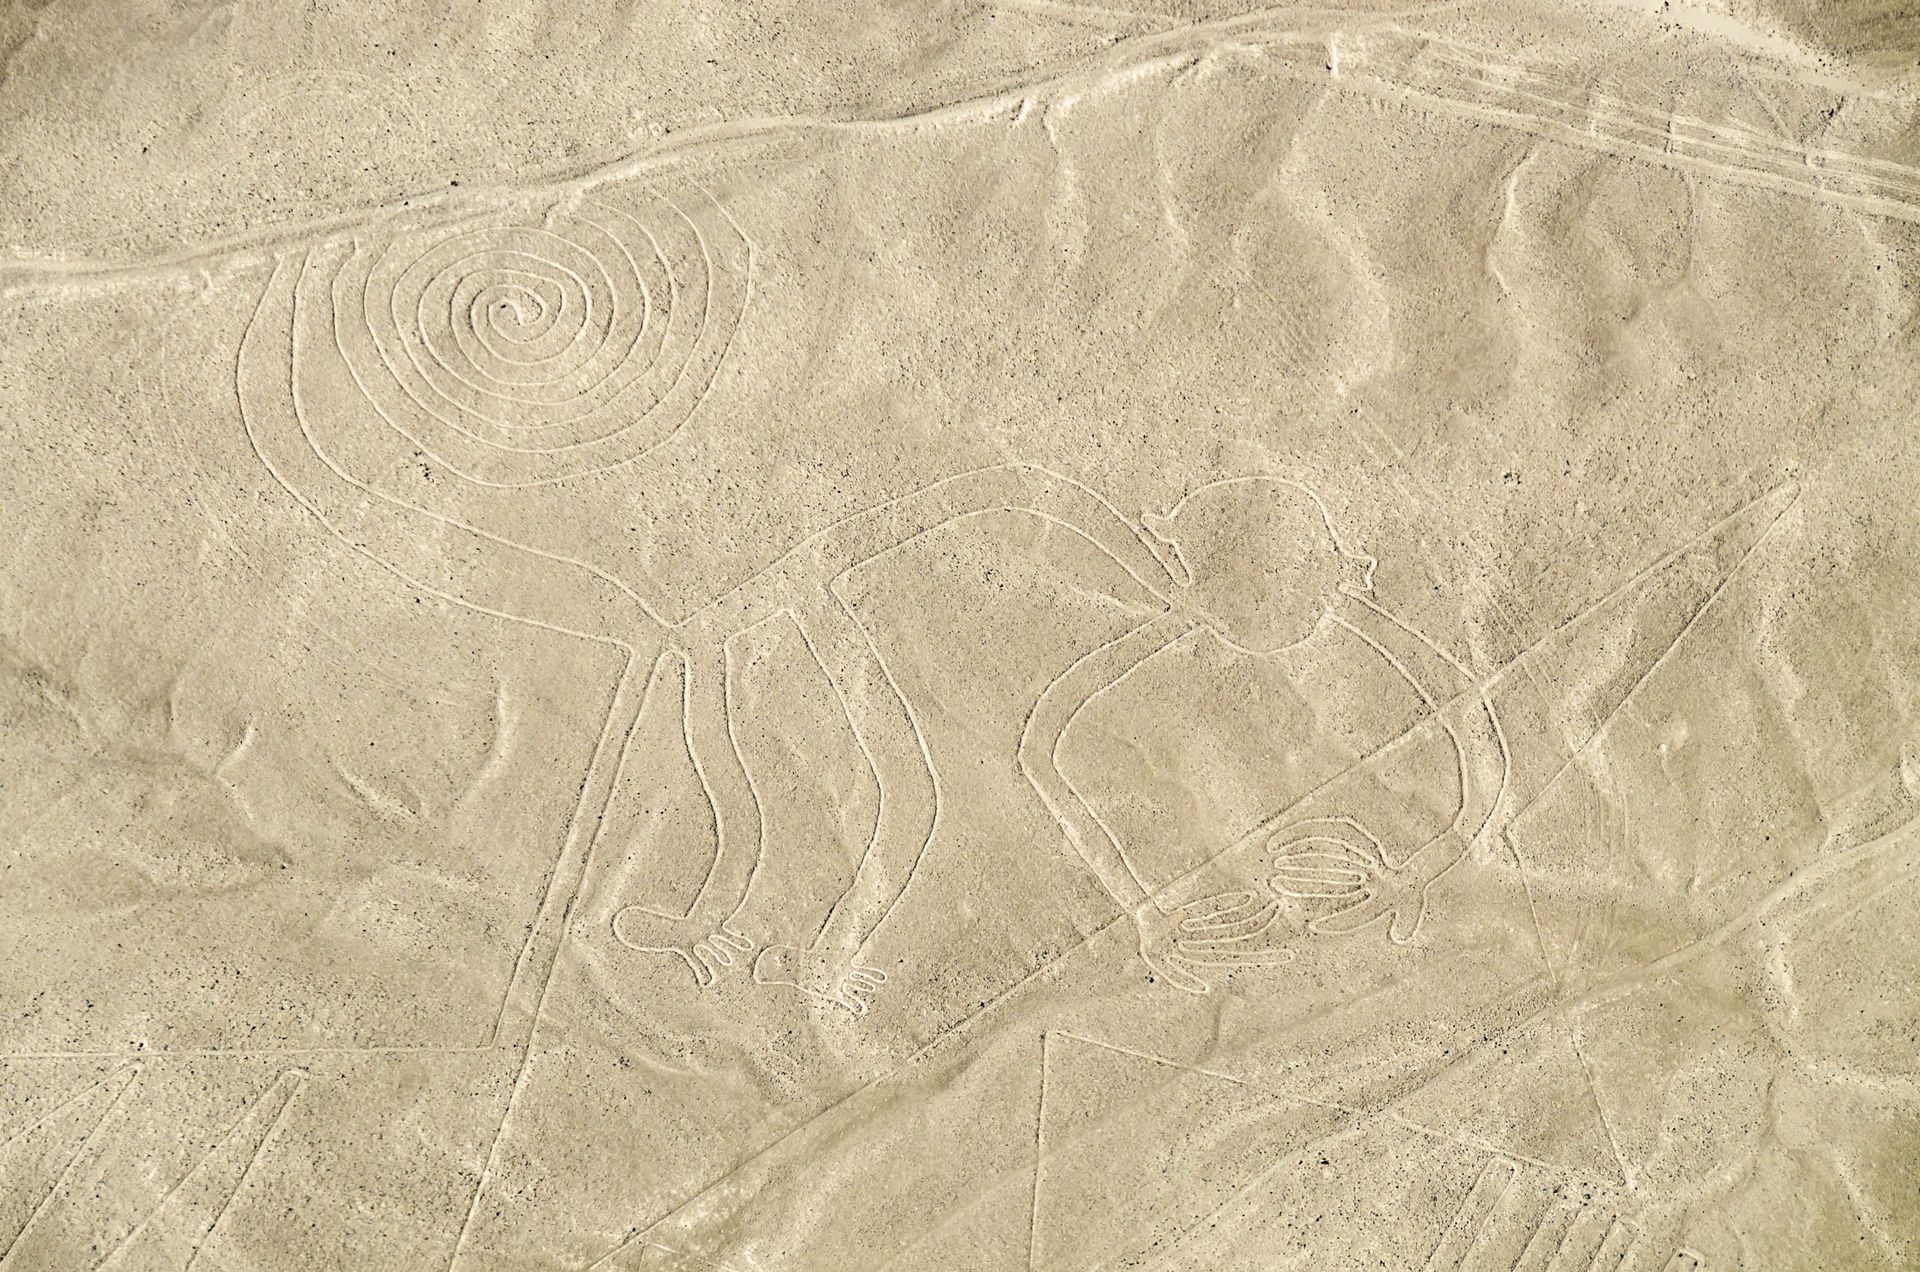 Vue aérienne des géoglyphes de Nazca, Patrimoine mondial de l'UNESCO.